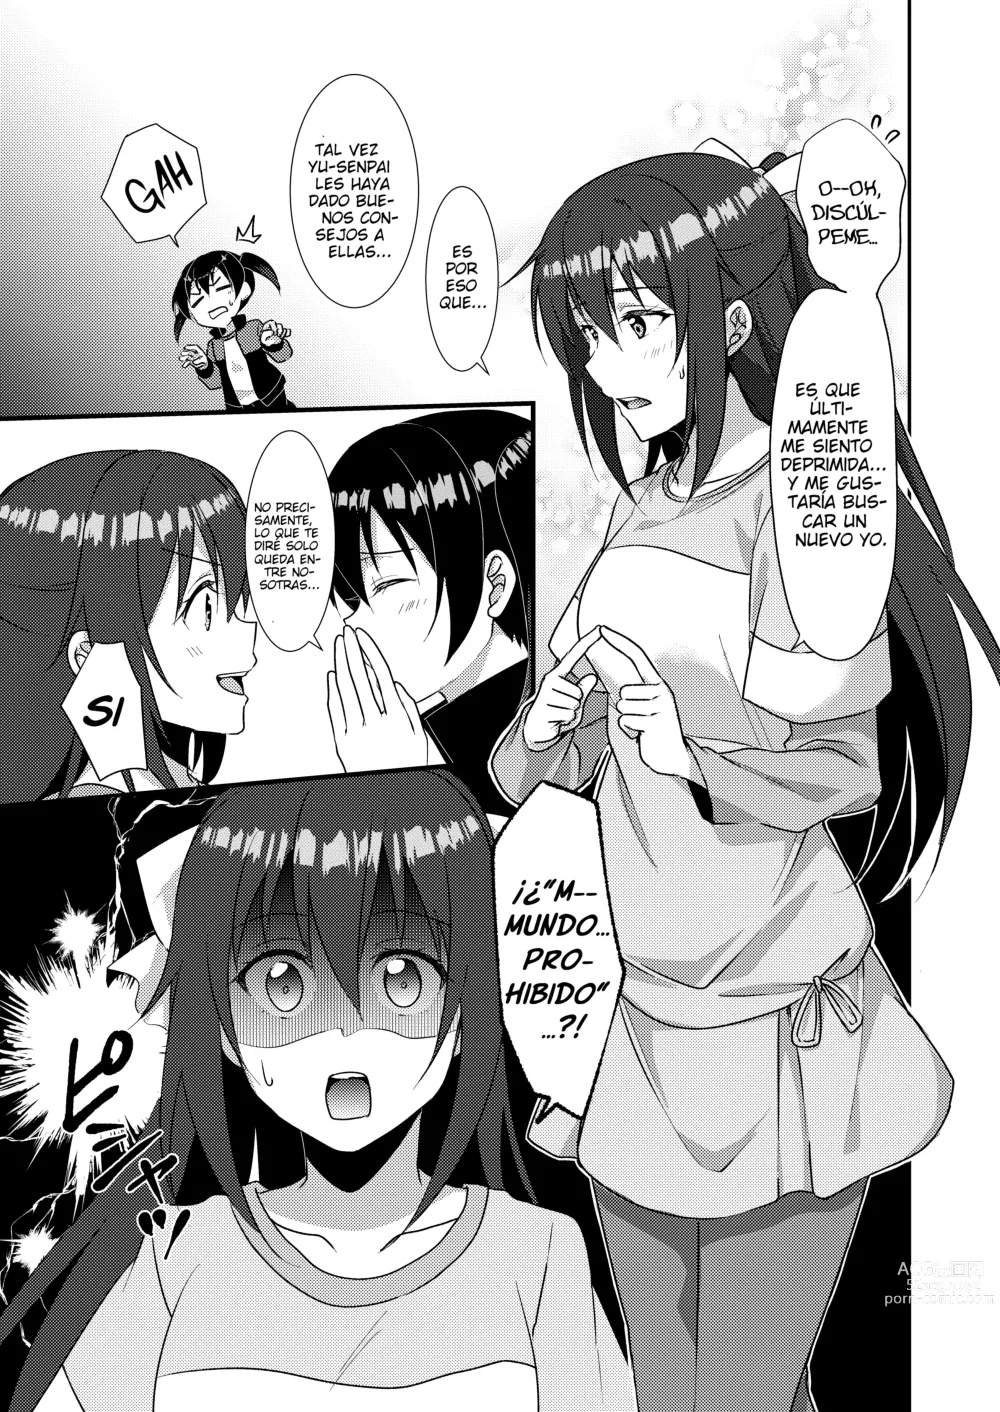 Page 4 of doujinshi Relato Yuristico: SAKURA